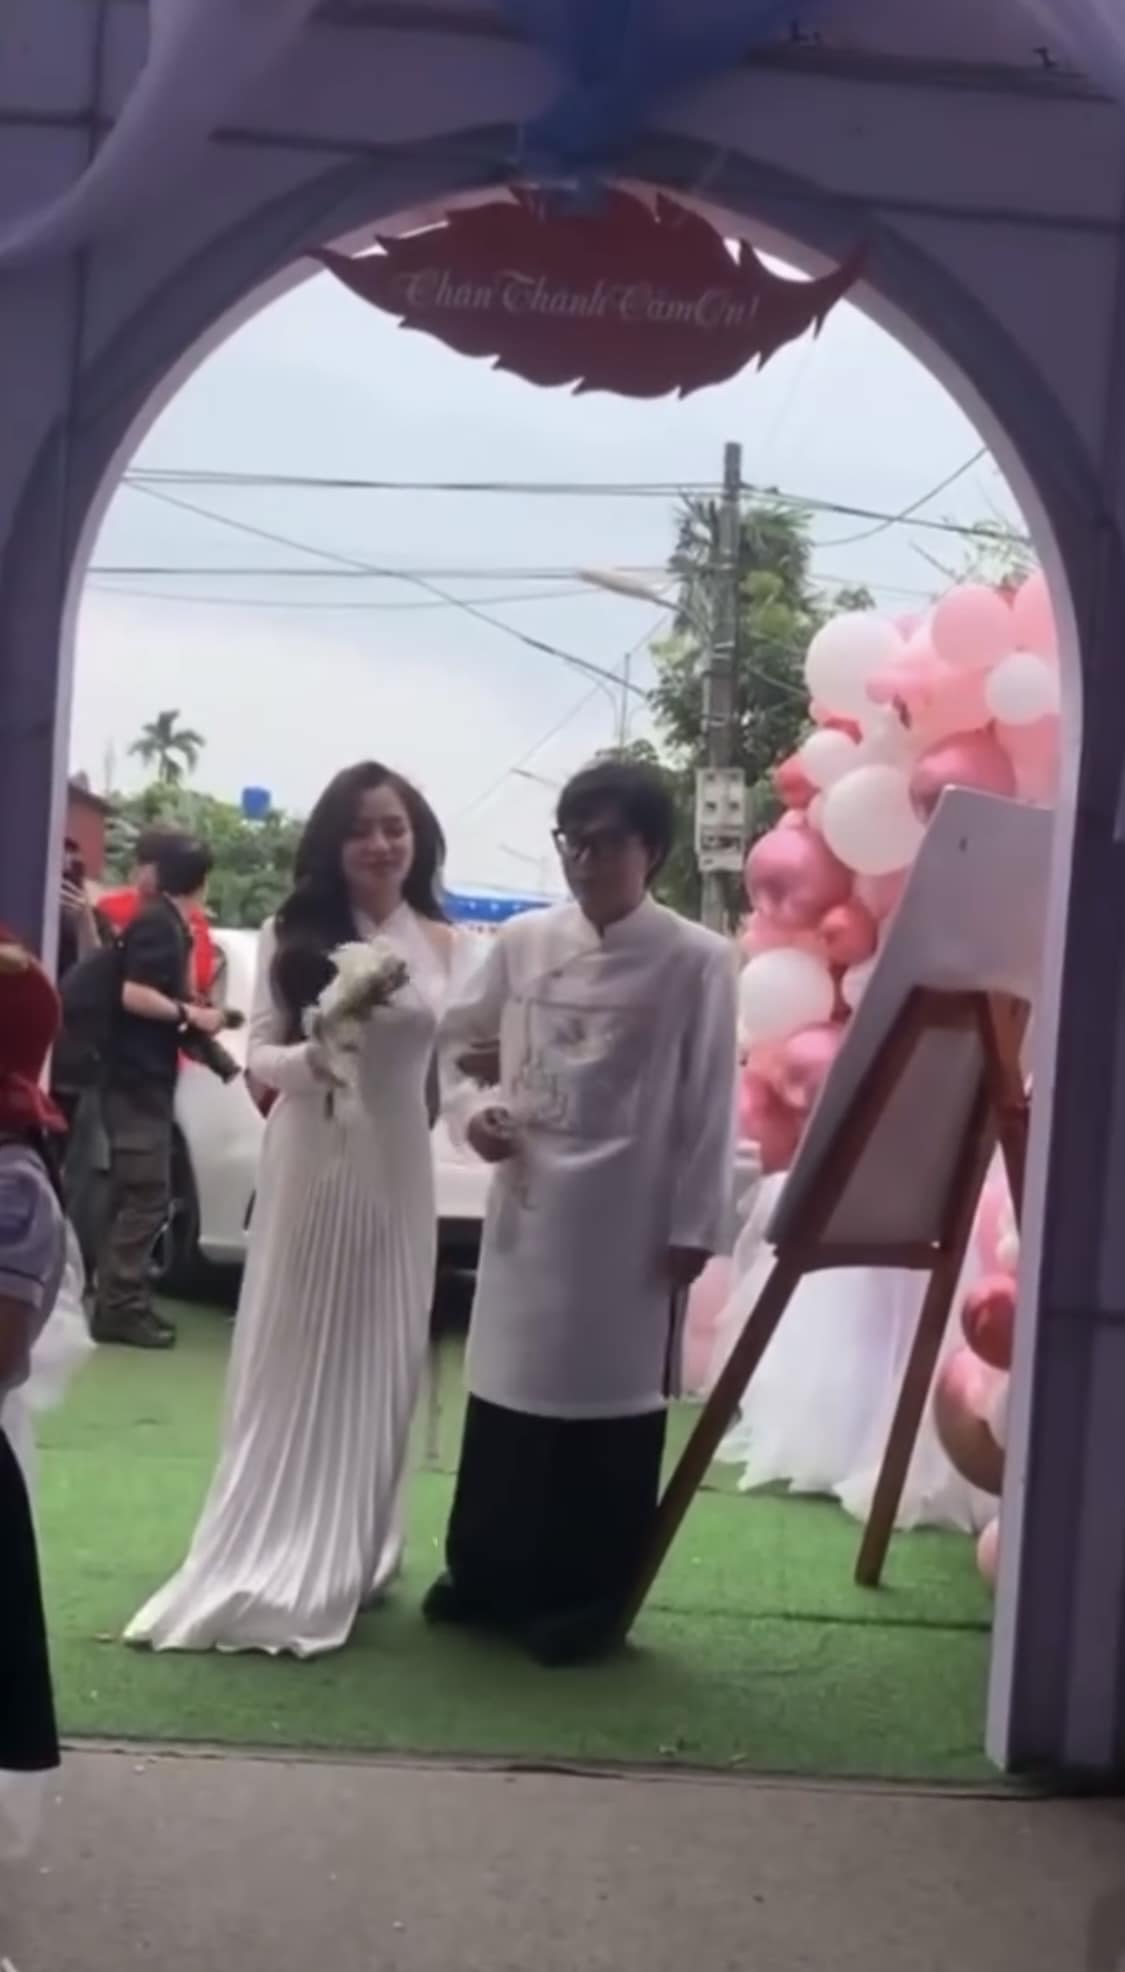 Không còn nghi ngờ: Đã phát trực tiếp đám cưới của Phạm Thoại ở quê, cô dâu xinh như 'con lai' - ảnh 4